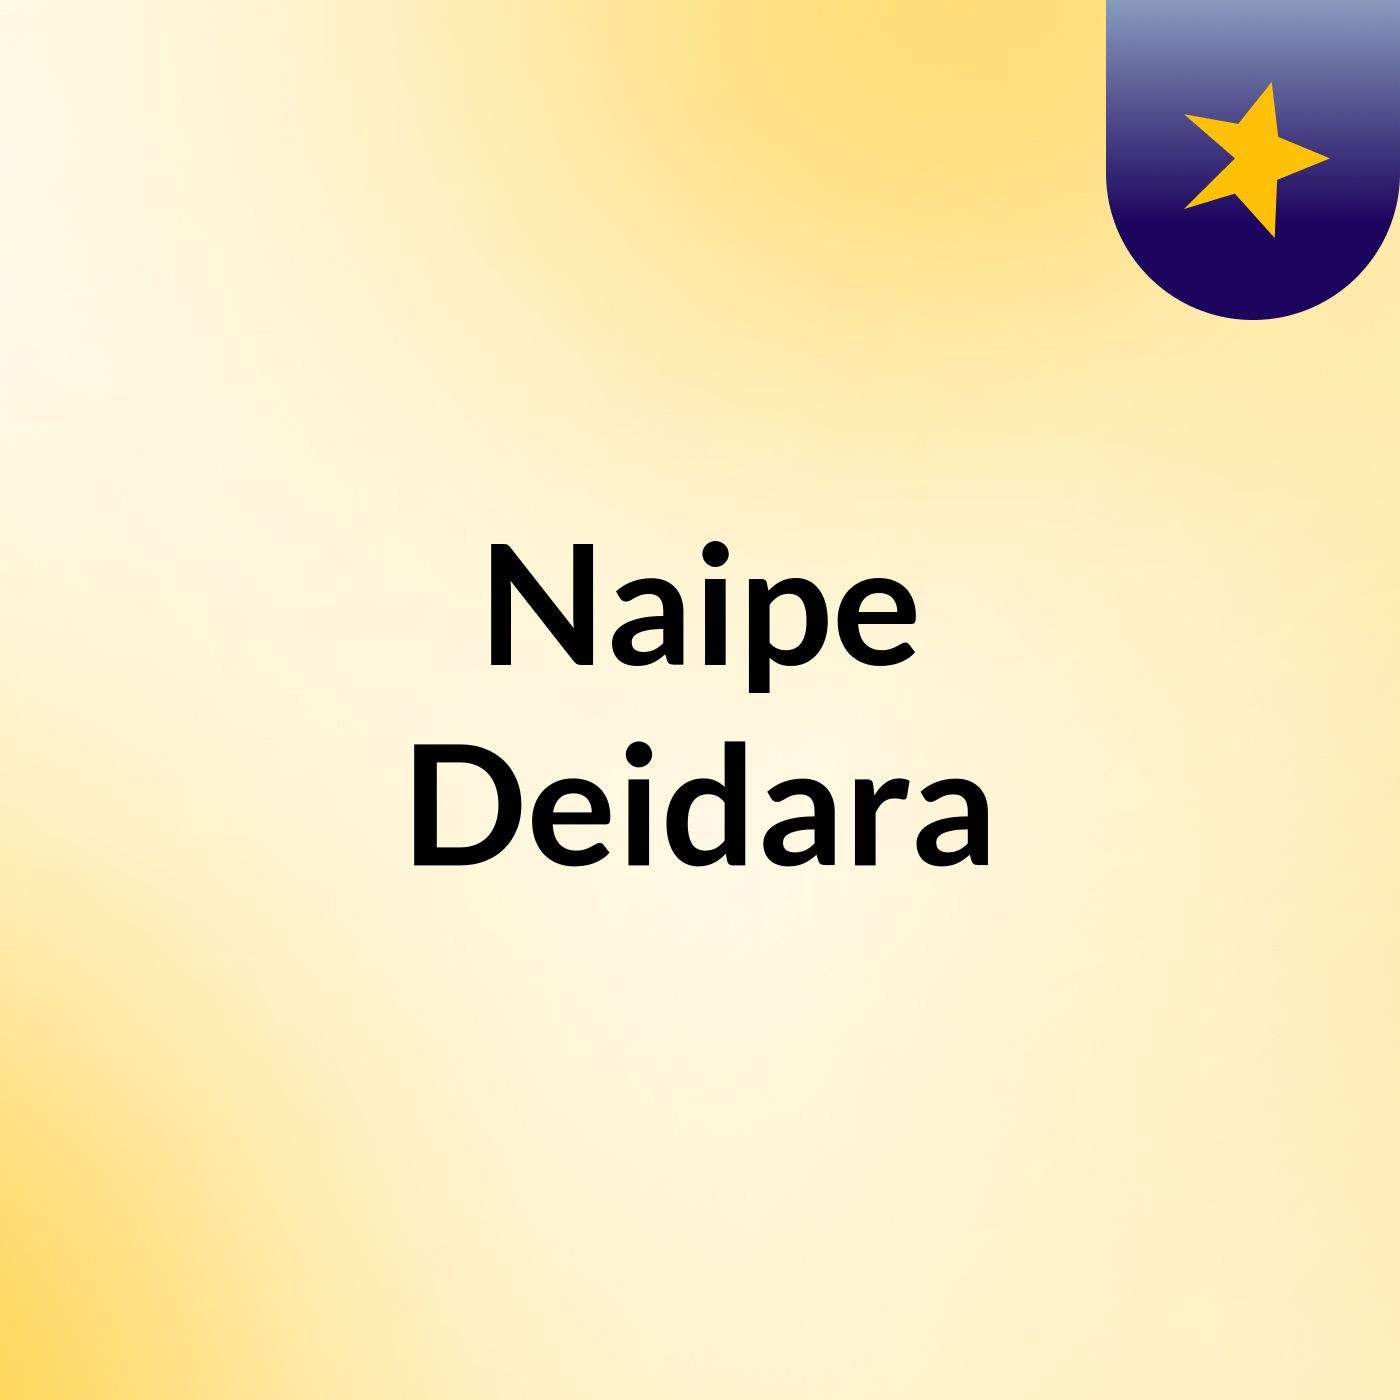 Naipe Deidara